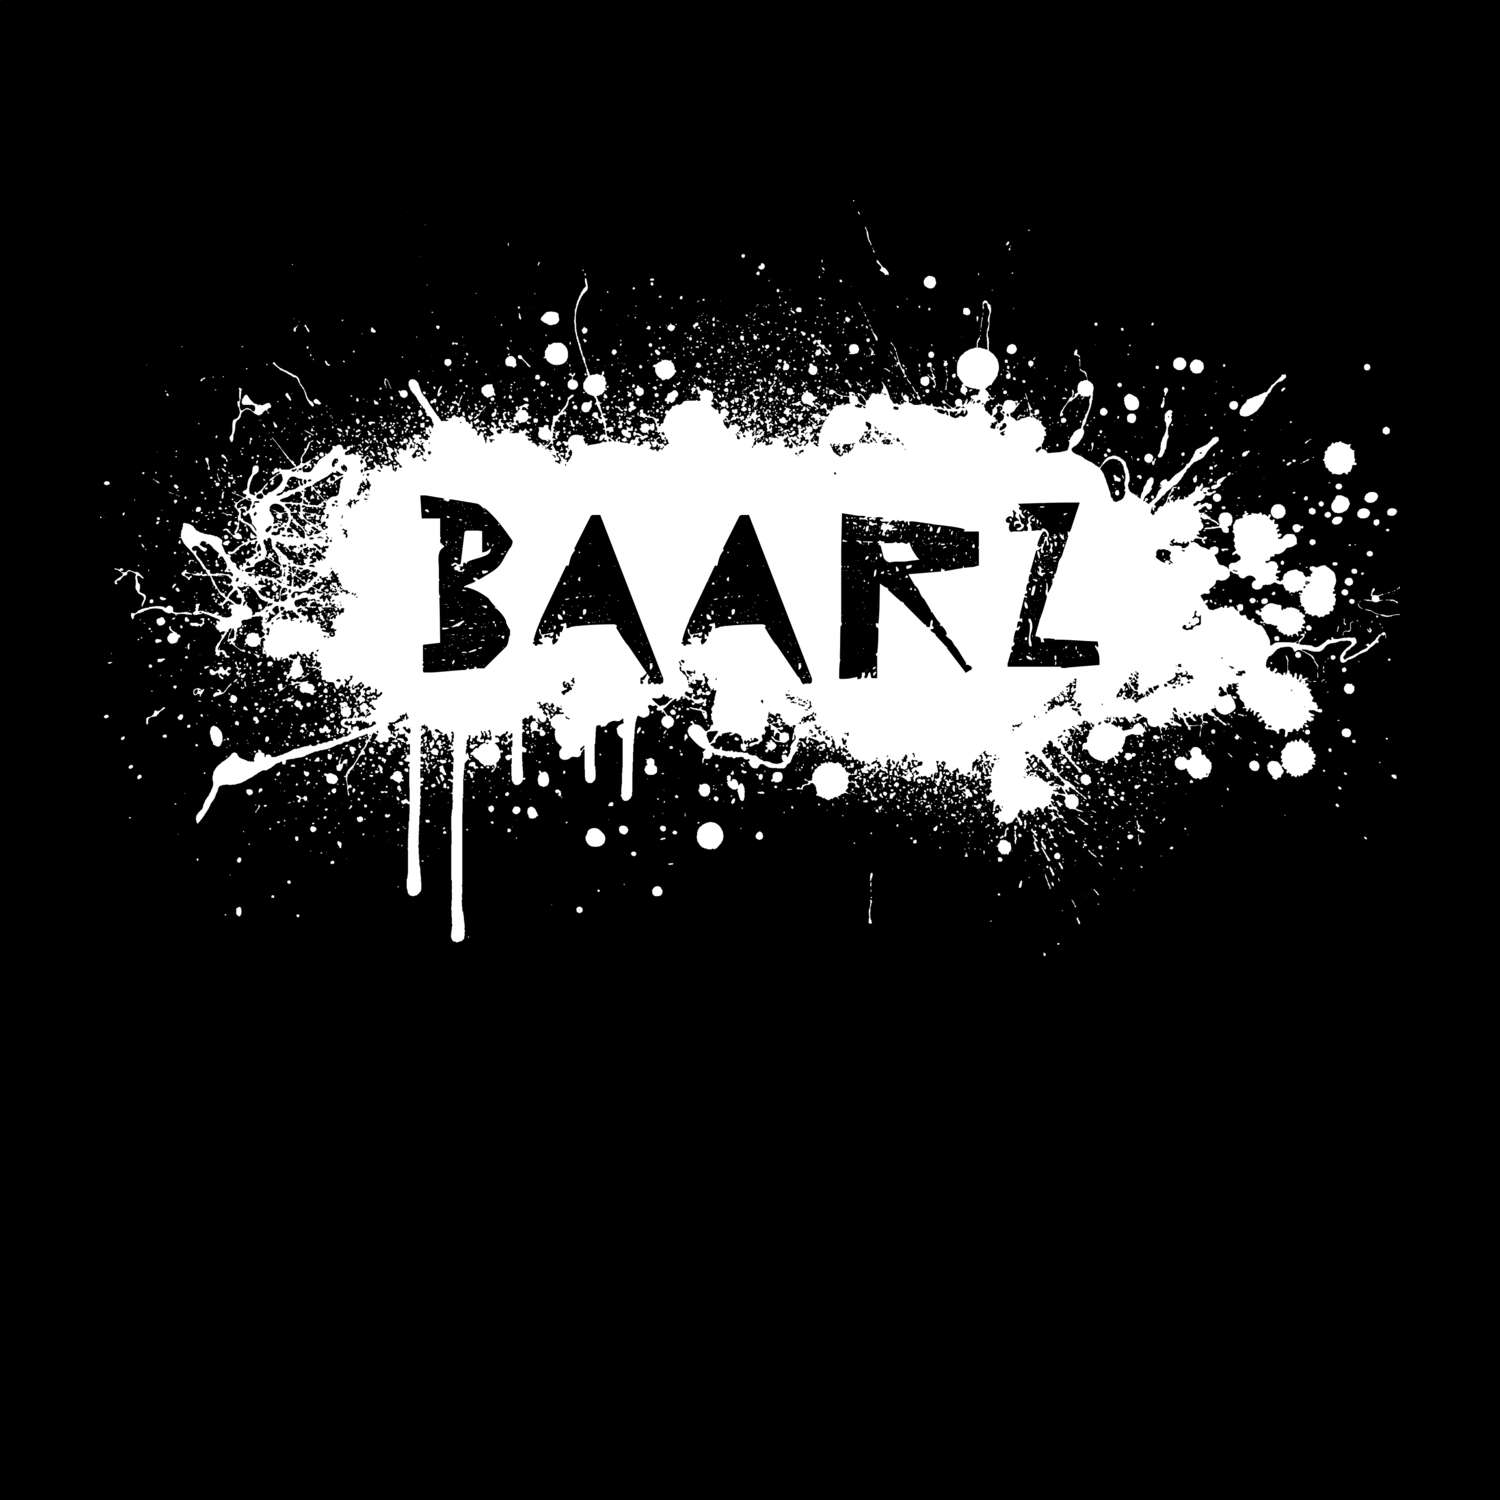 Baarz T-Shirt »Paint Splash Punk«